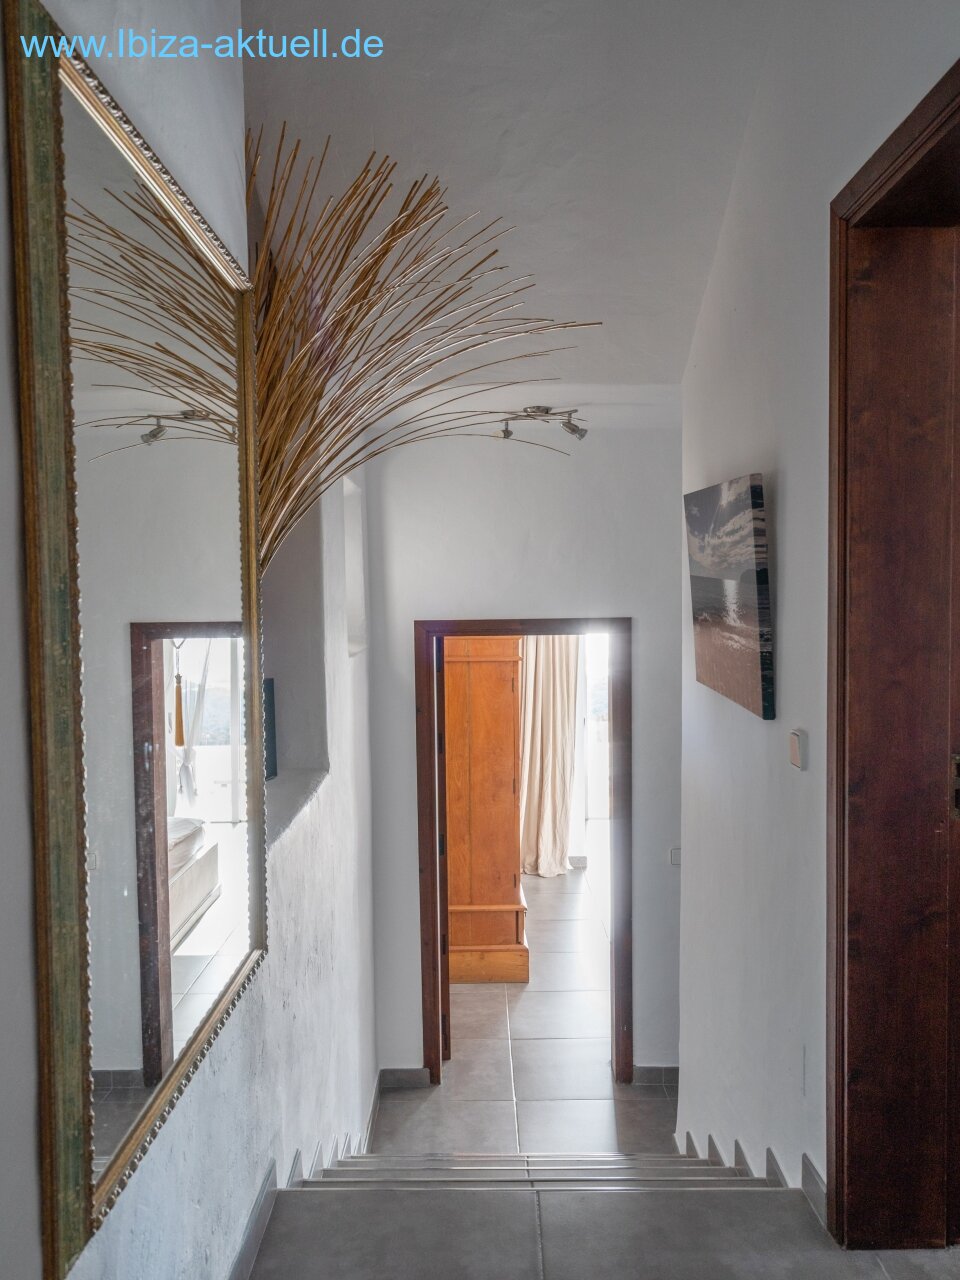 corridor to the bedrooms